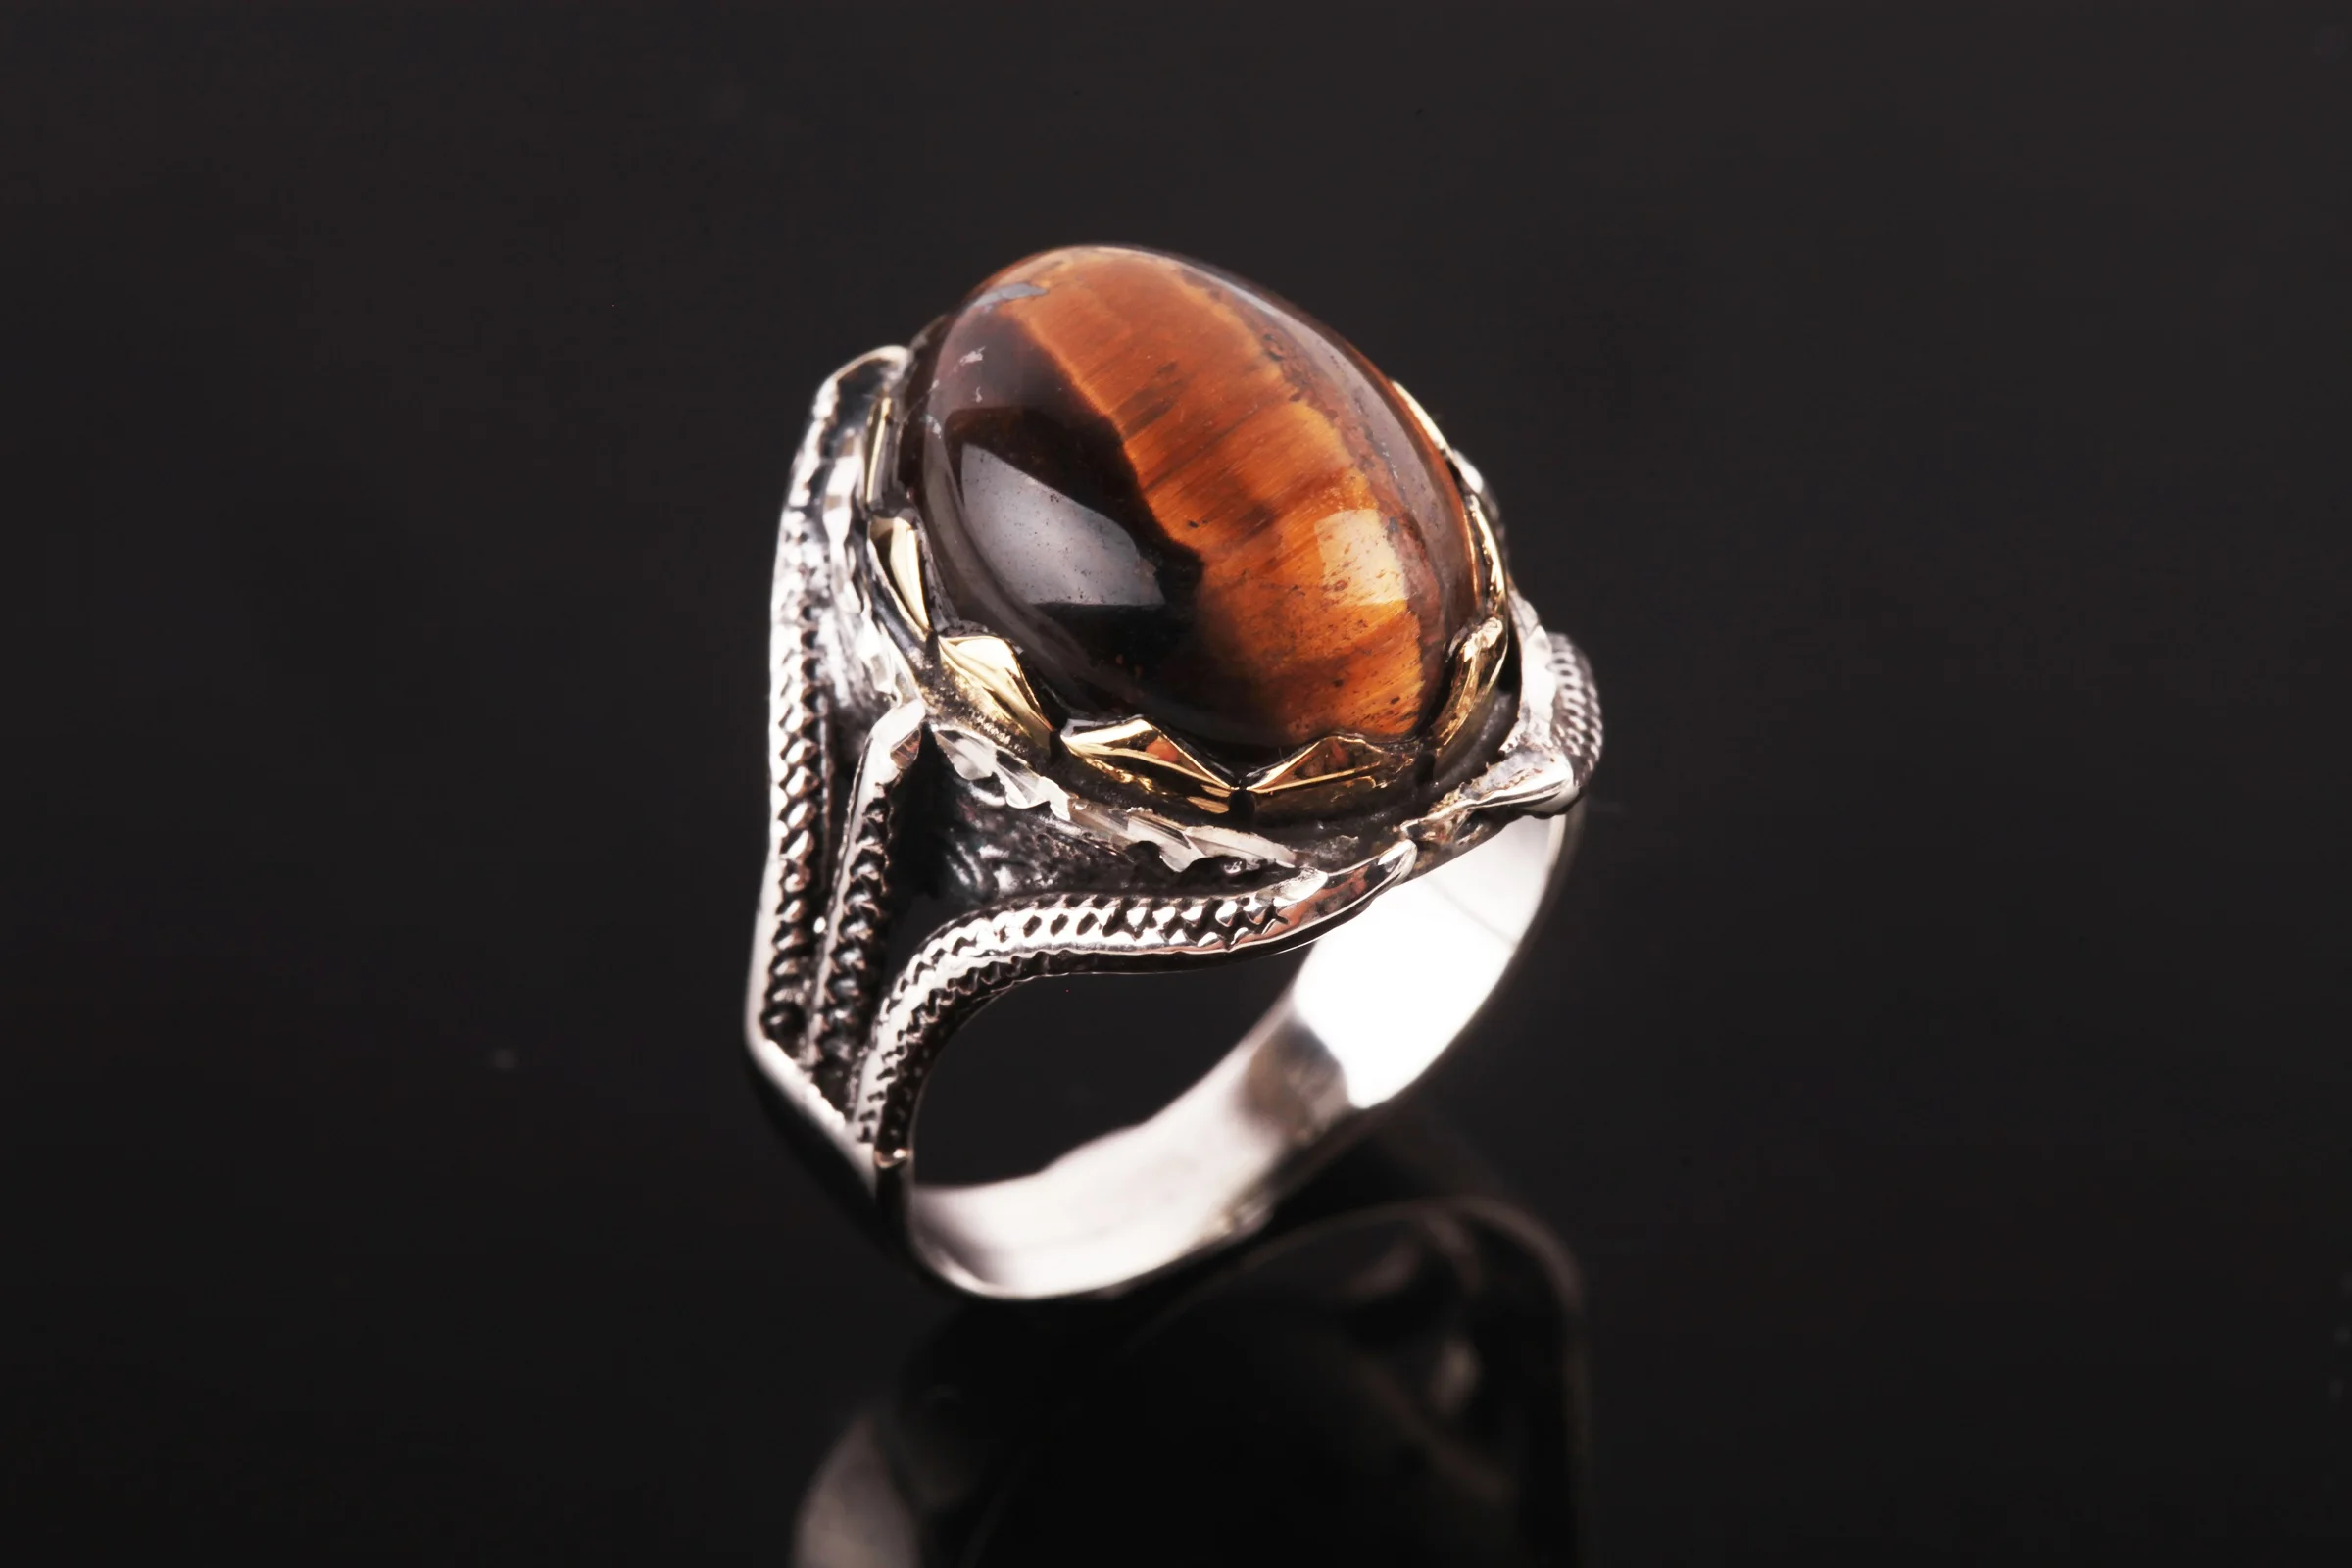 

Кольцо мужское из серебра с драгоценным камнем «тигровый глаз»